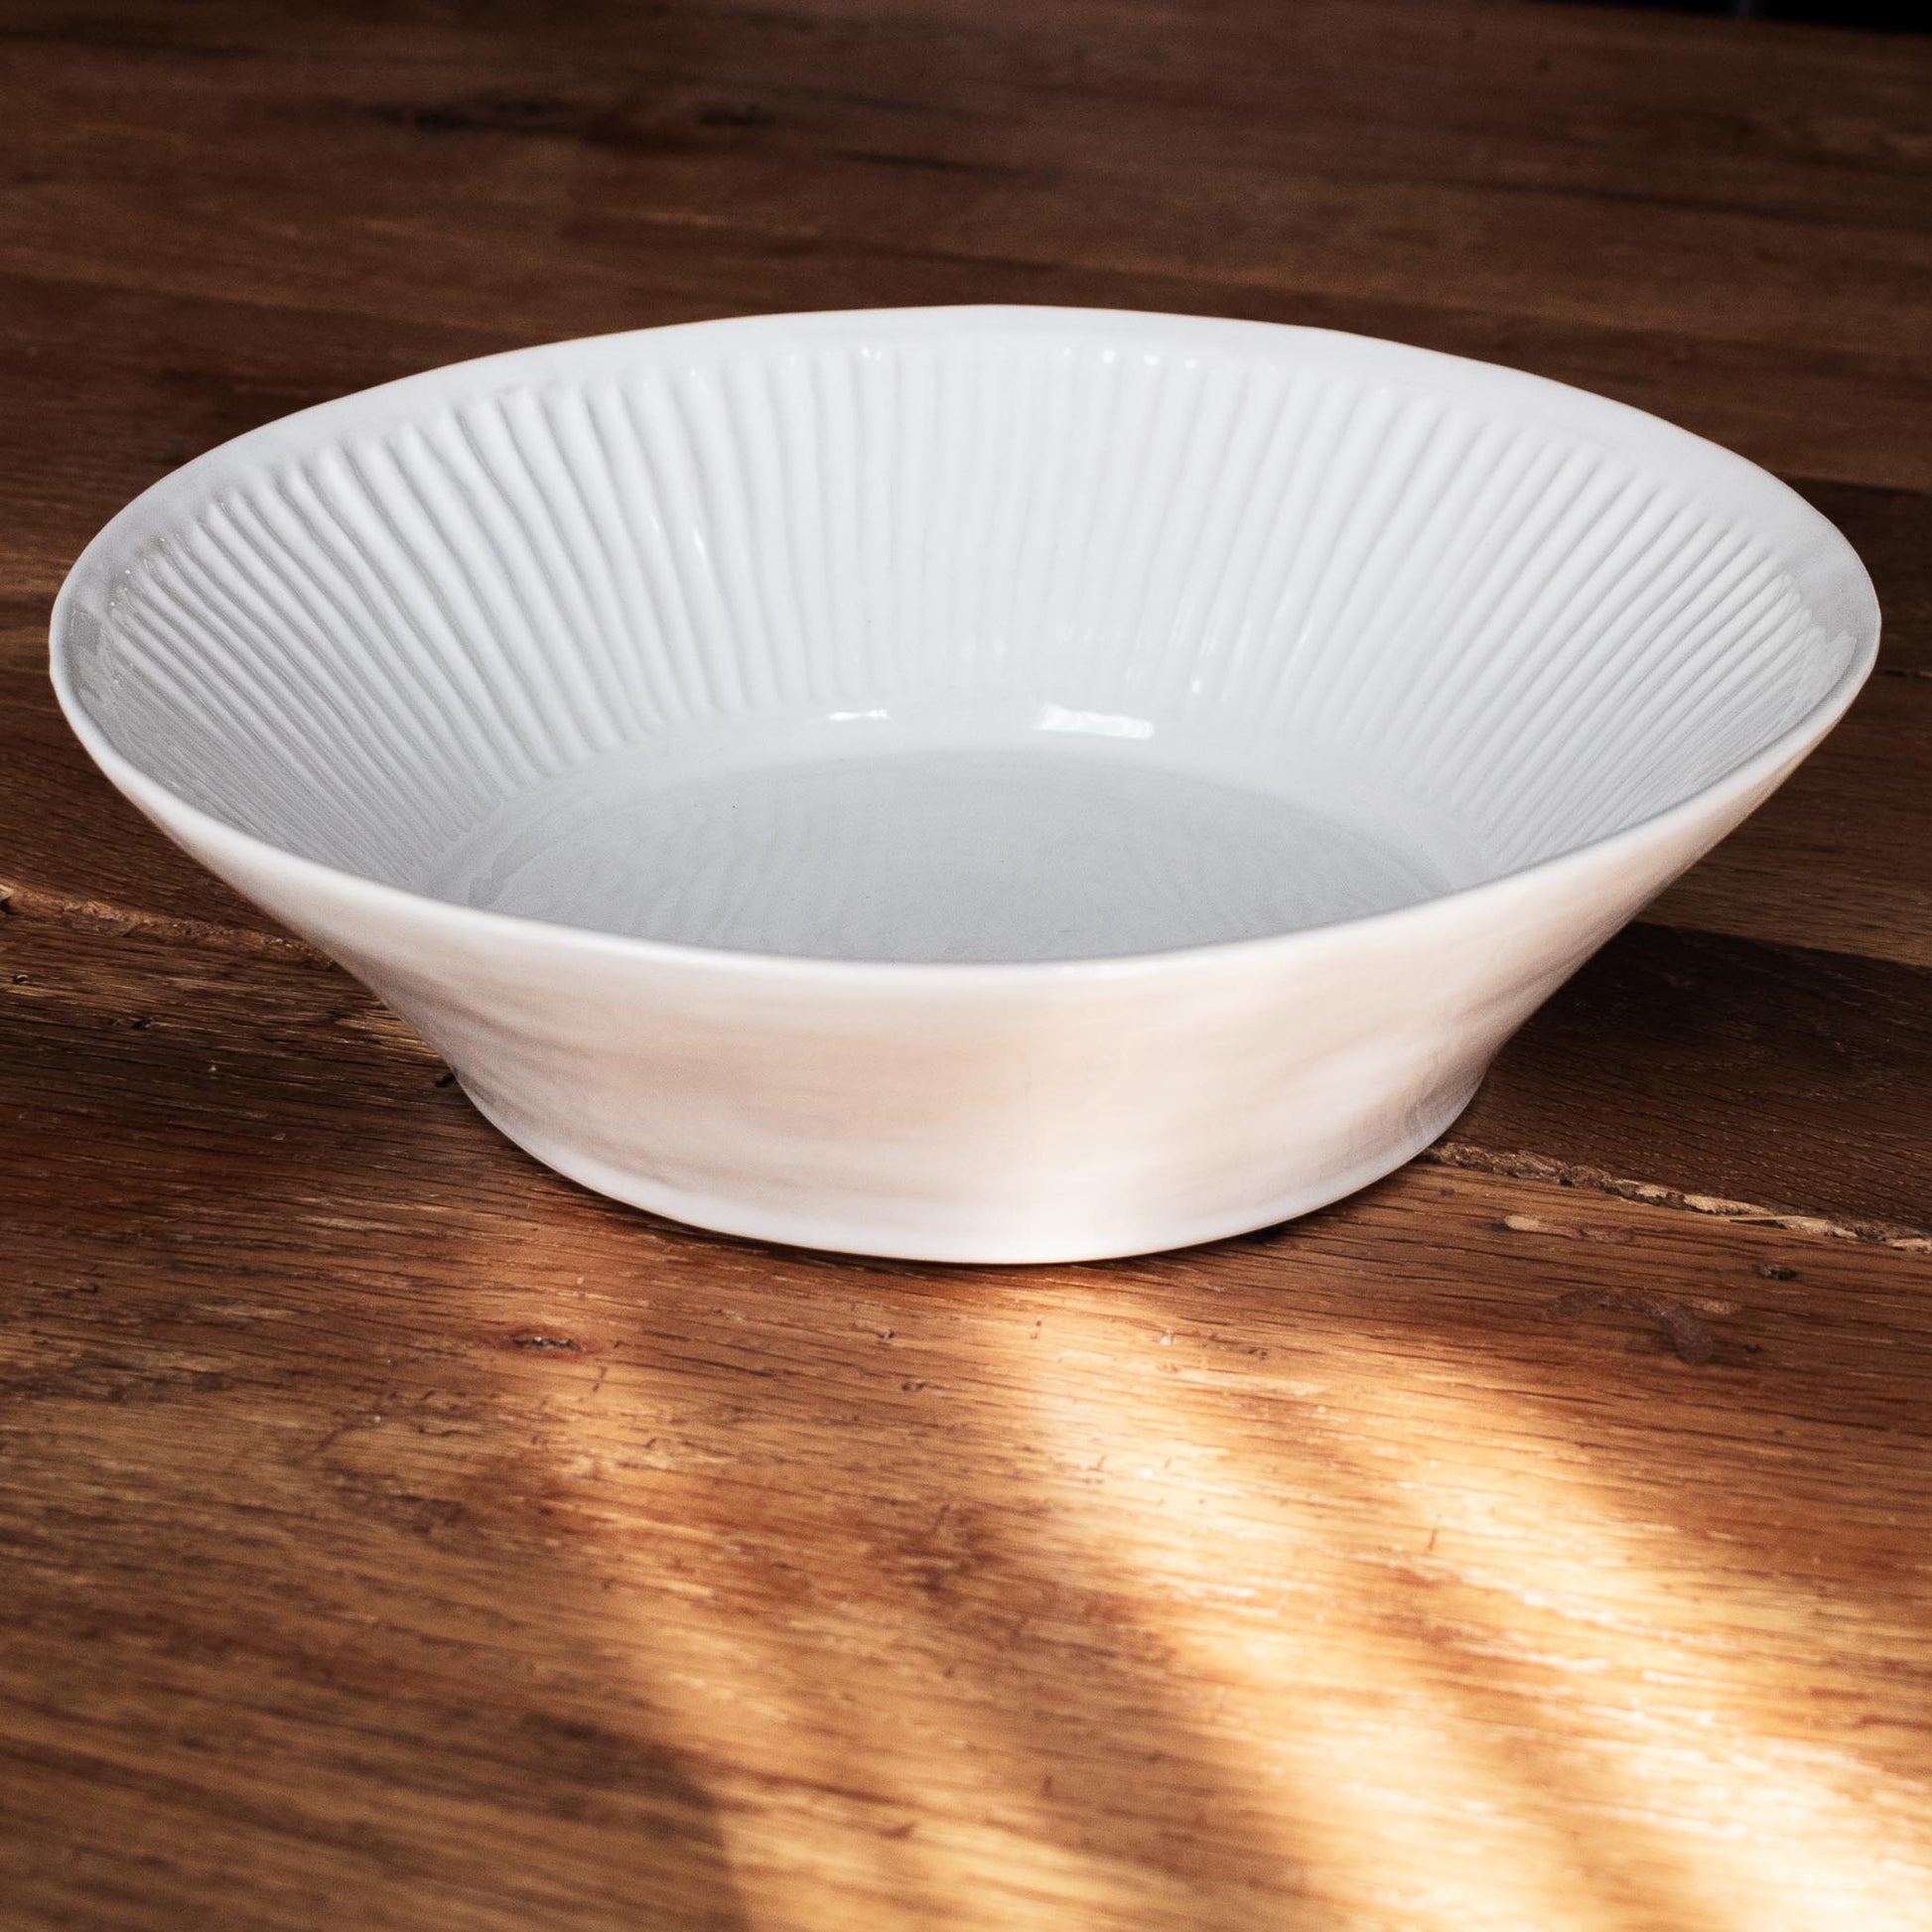 Artesa ceramic bowl/vessel on reclaimed wood table.